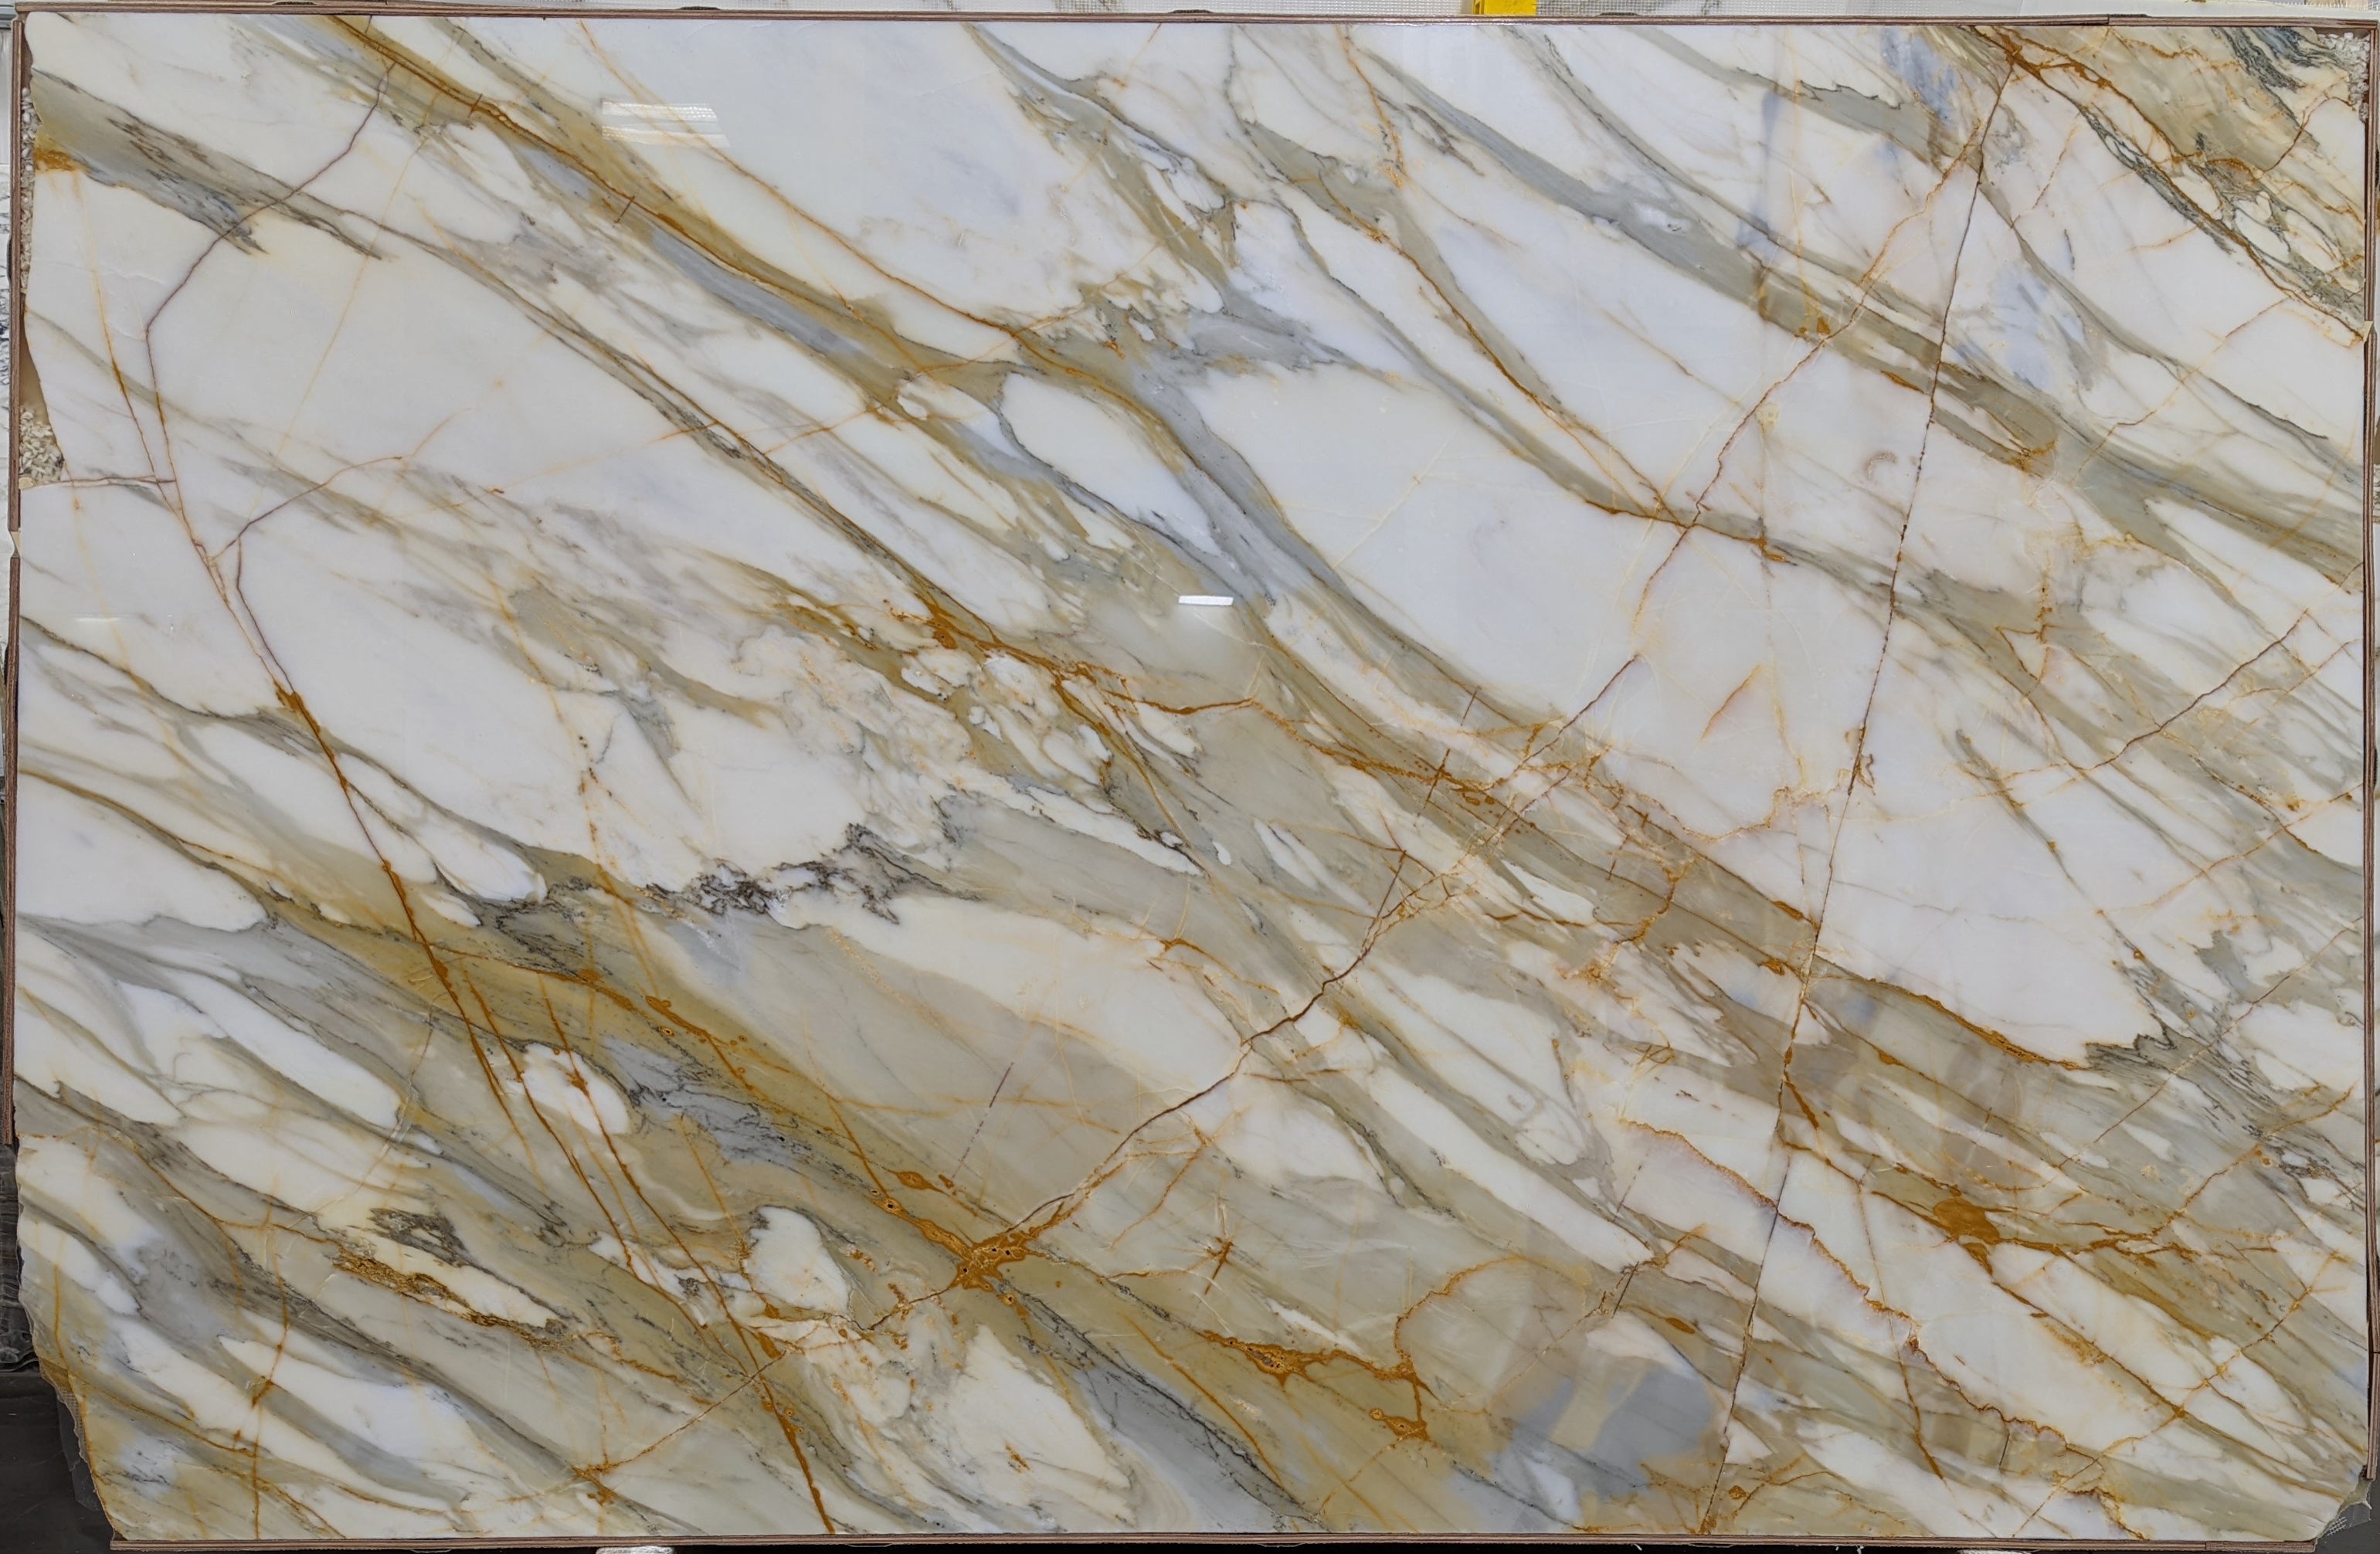  Calacatta Macchia Vecchia Marble Slab 3/4 - 26092#17 -  68x107 